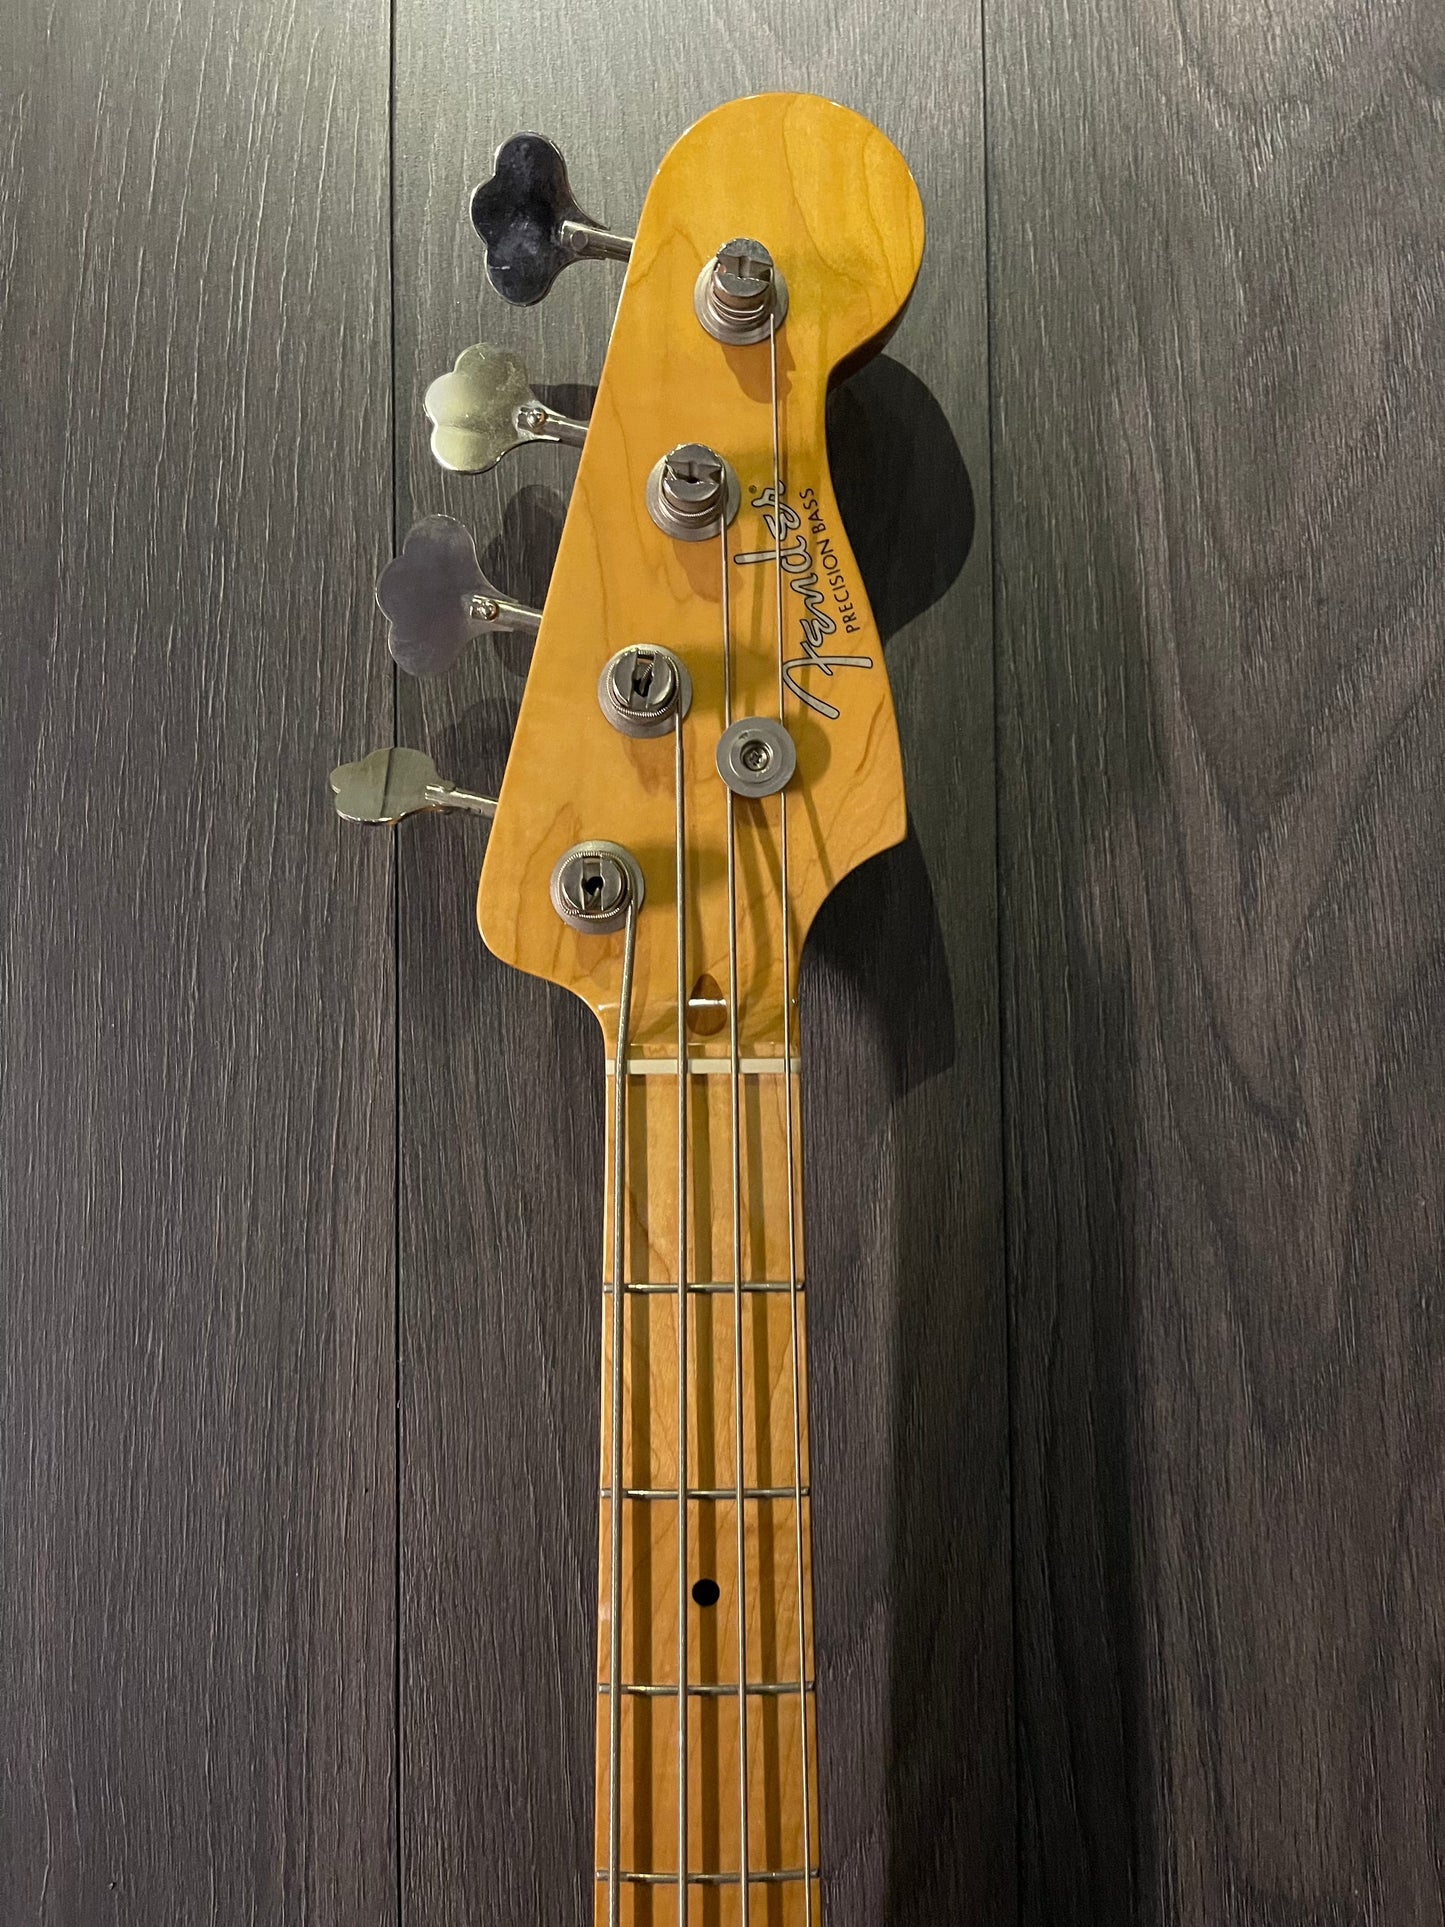 Fender Mexico 1950's Precision Bass Guitar (Pre-Owned)